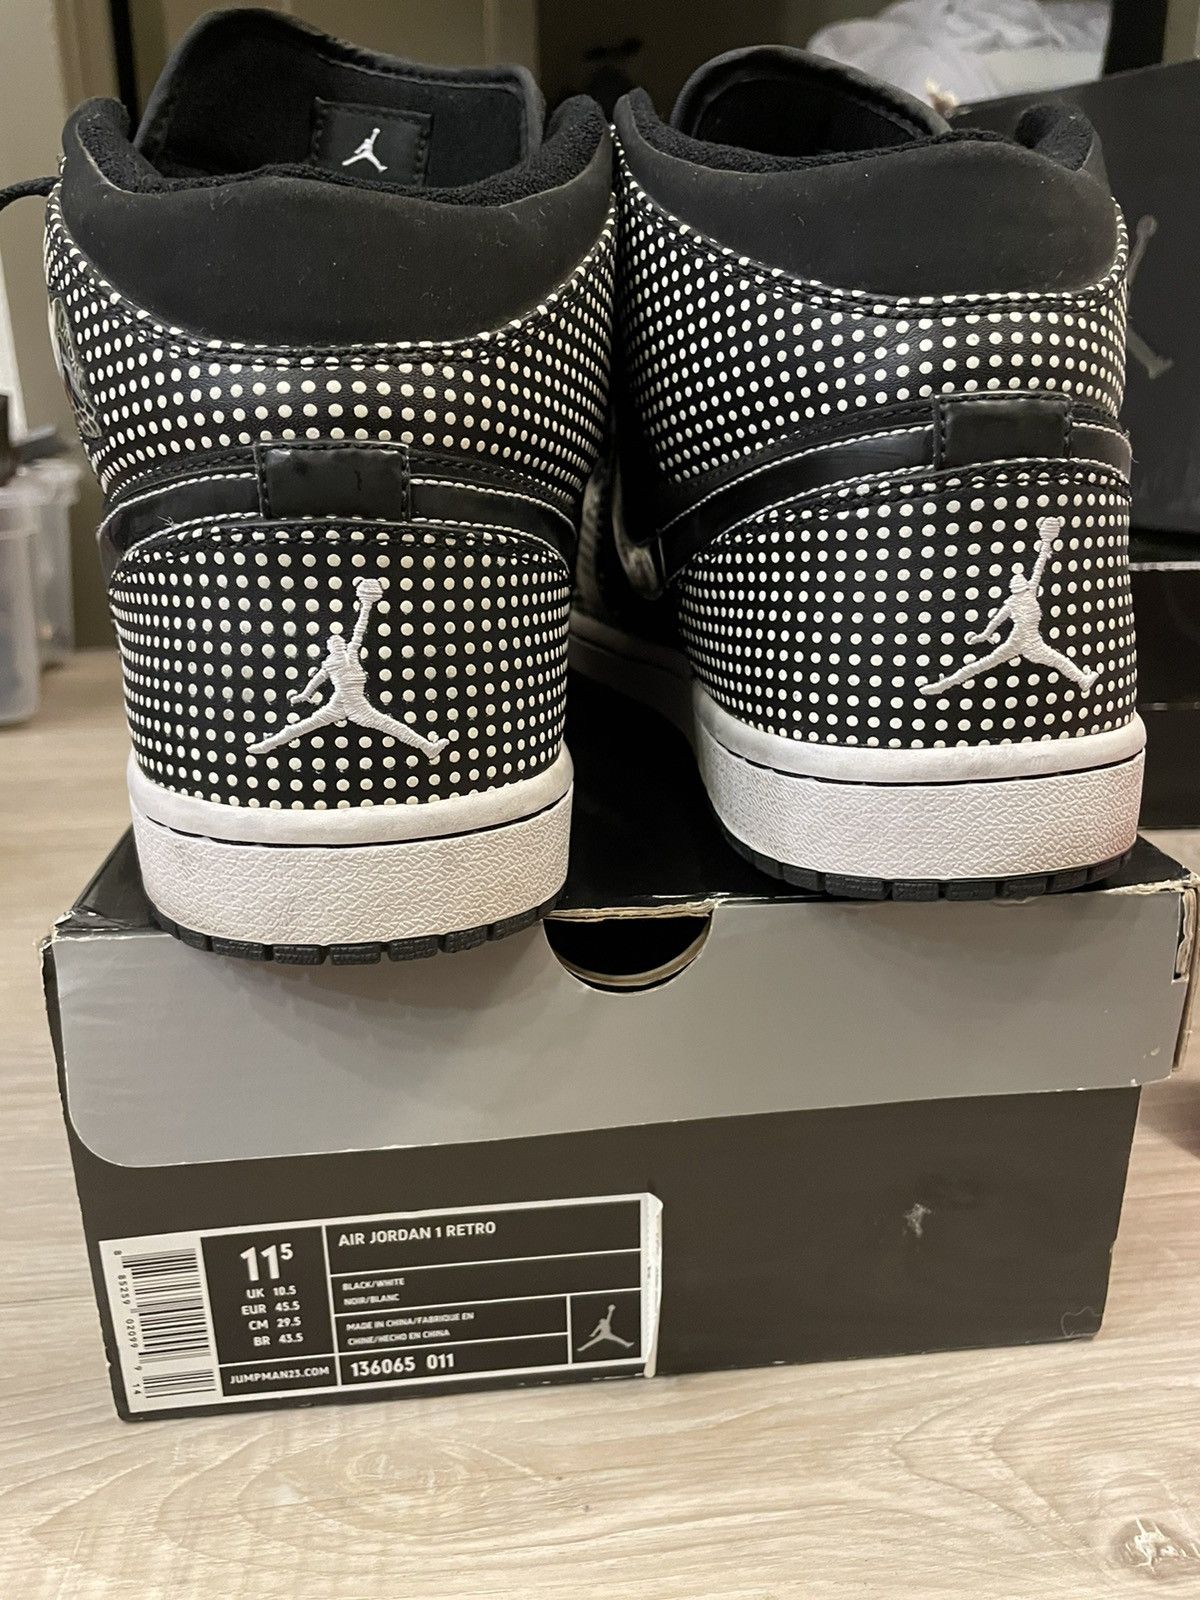 Nike Air Jordan 1 Retro Black White Size US 11.5 / EU 44-45 - 5 Thumbnail